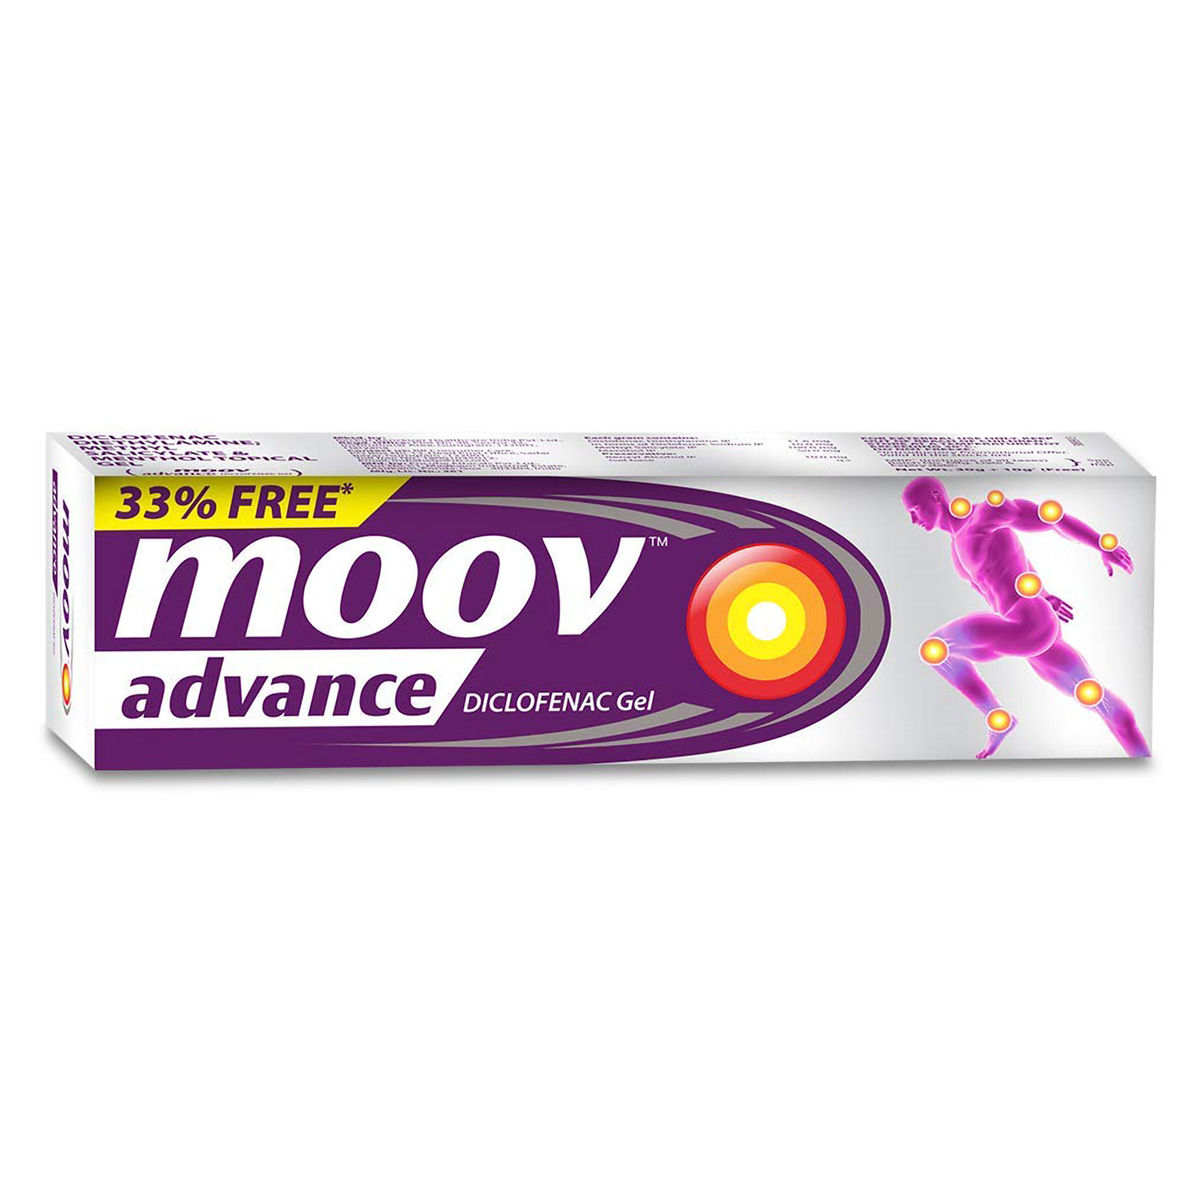 Buy Moov Advance Diclofenac Gel, 30 gm Online